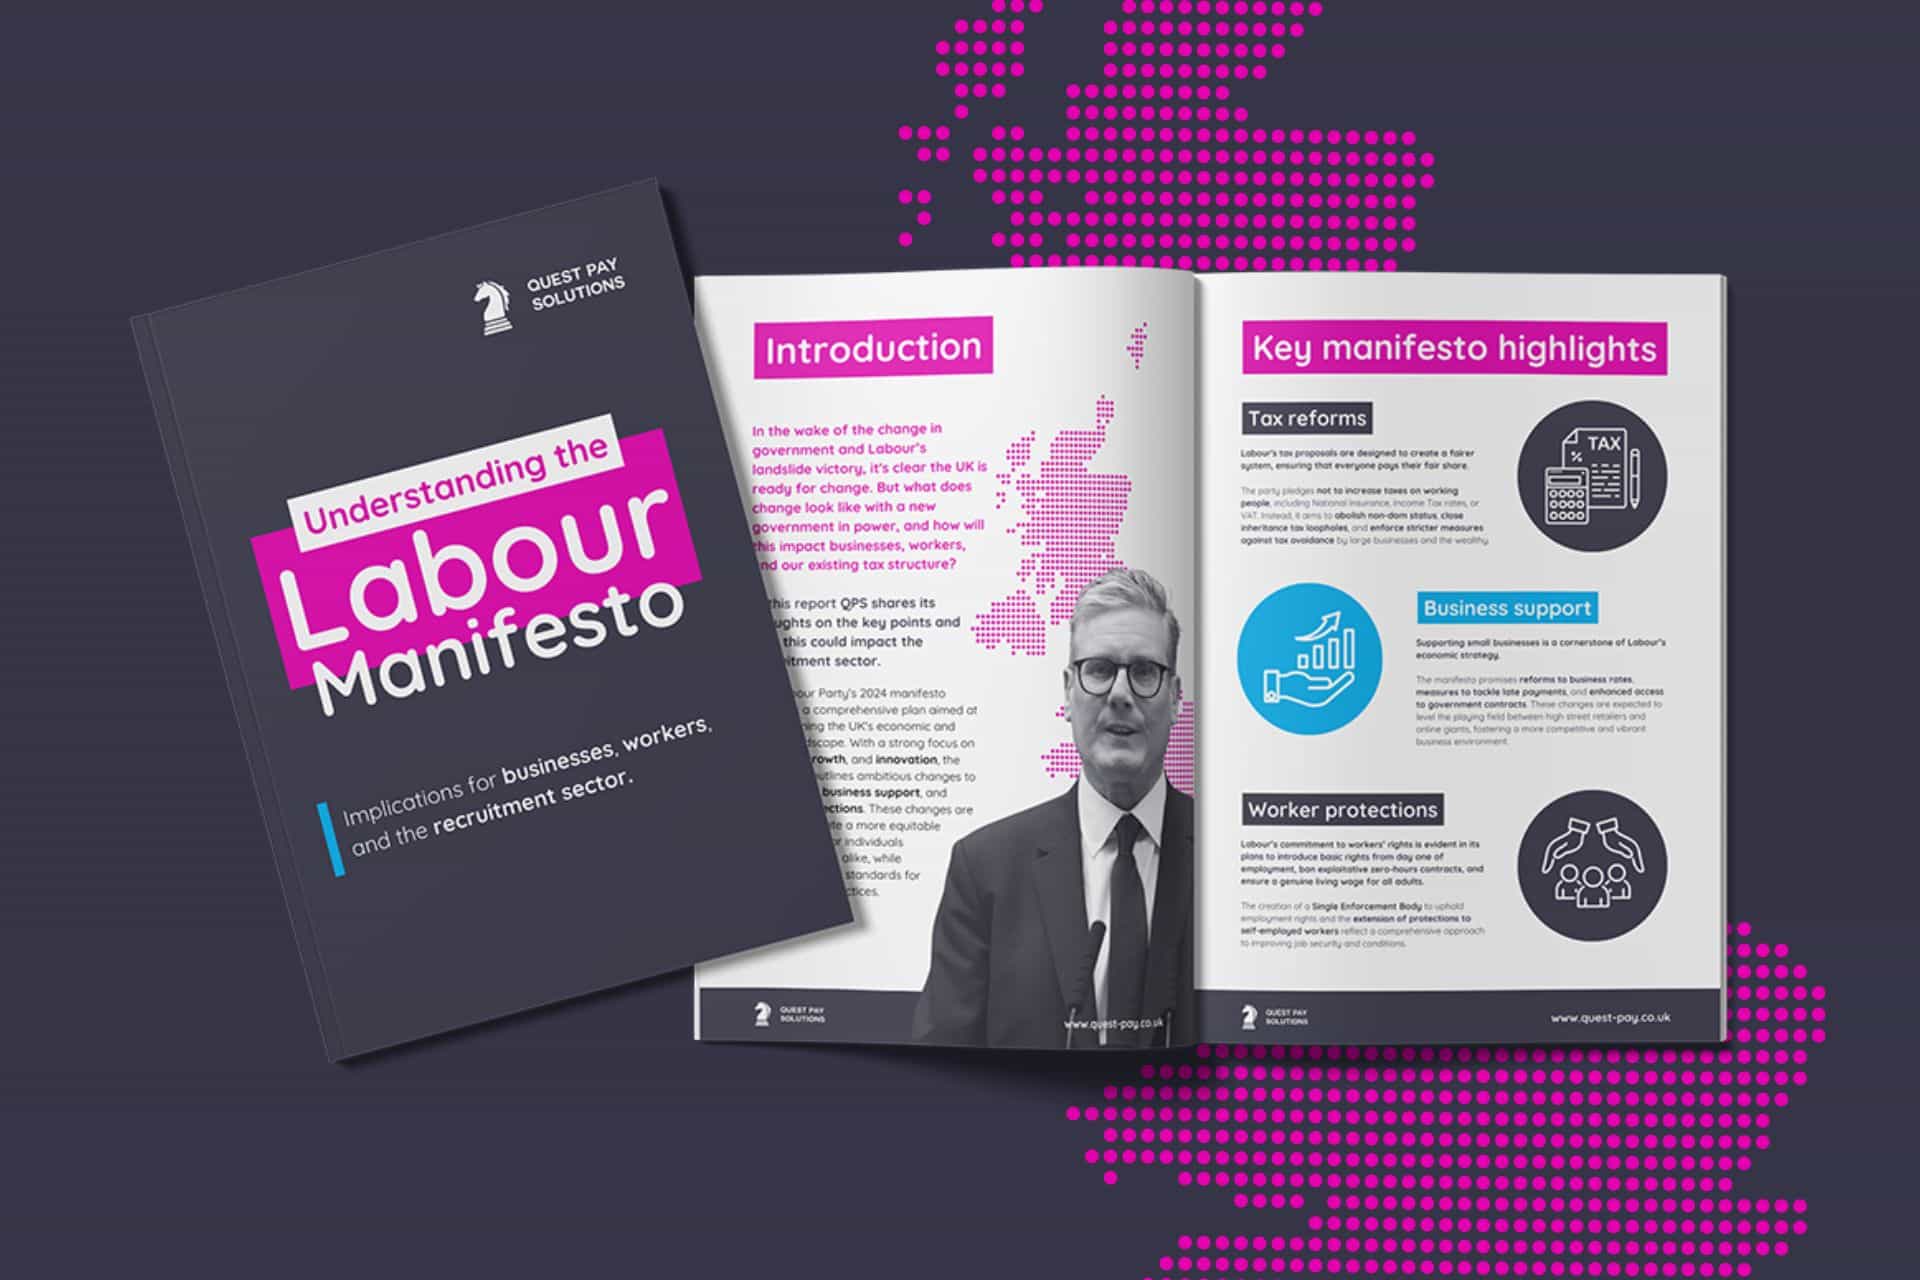 Understanding the labour manifesto